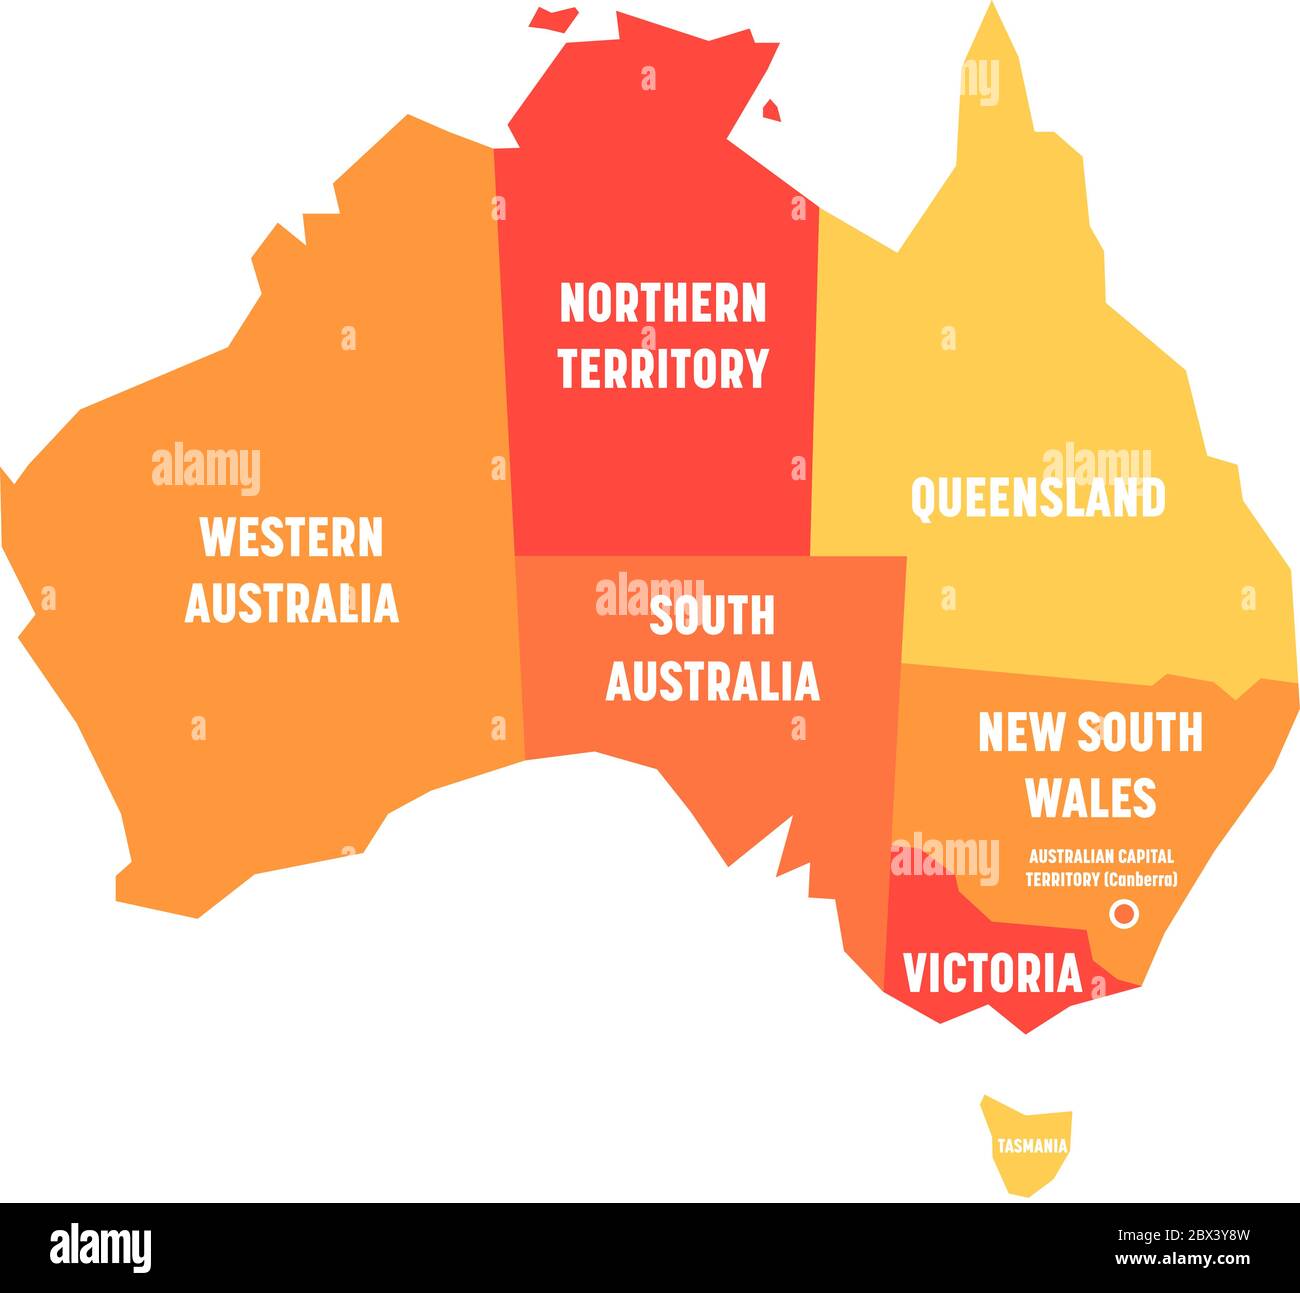 Vereinfachte Karte von Australien in Staaten und Territorien unterteilt. Orangefarbene flache Karte mit weißen Etiketten. Vektorgrafik. Stock Vektor